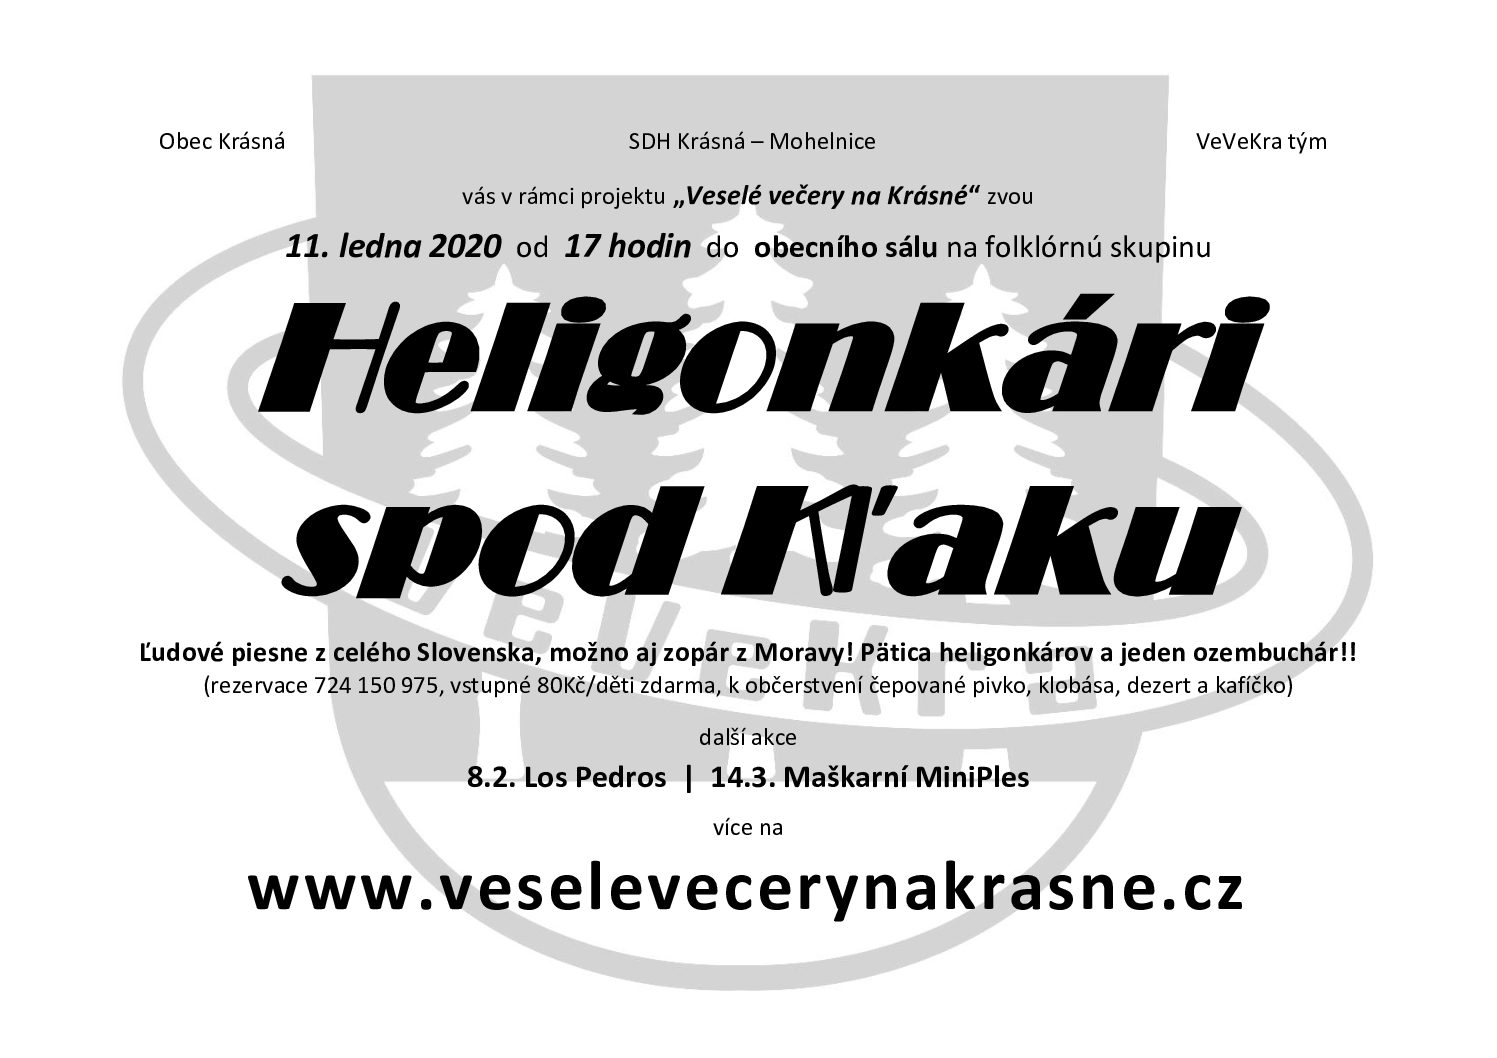 Veselé večery na Krásné – Heligonkári spod Kl’aku – 11.1.2020, 17:00, obecní sál